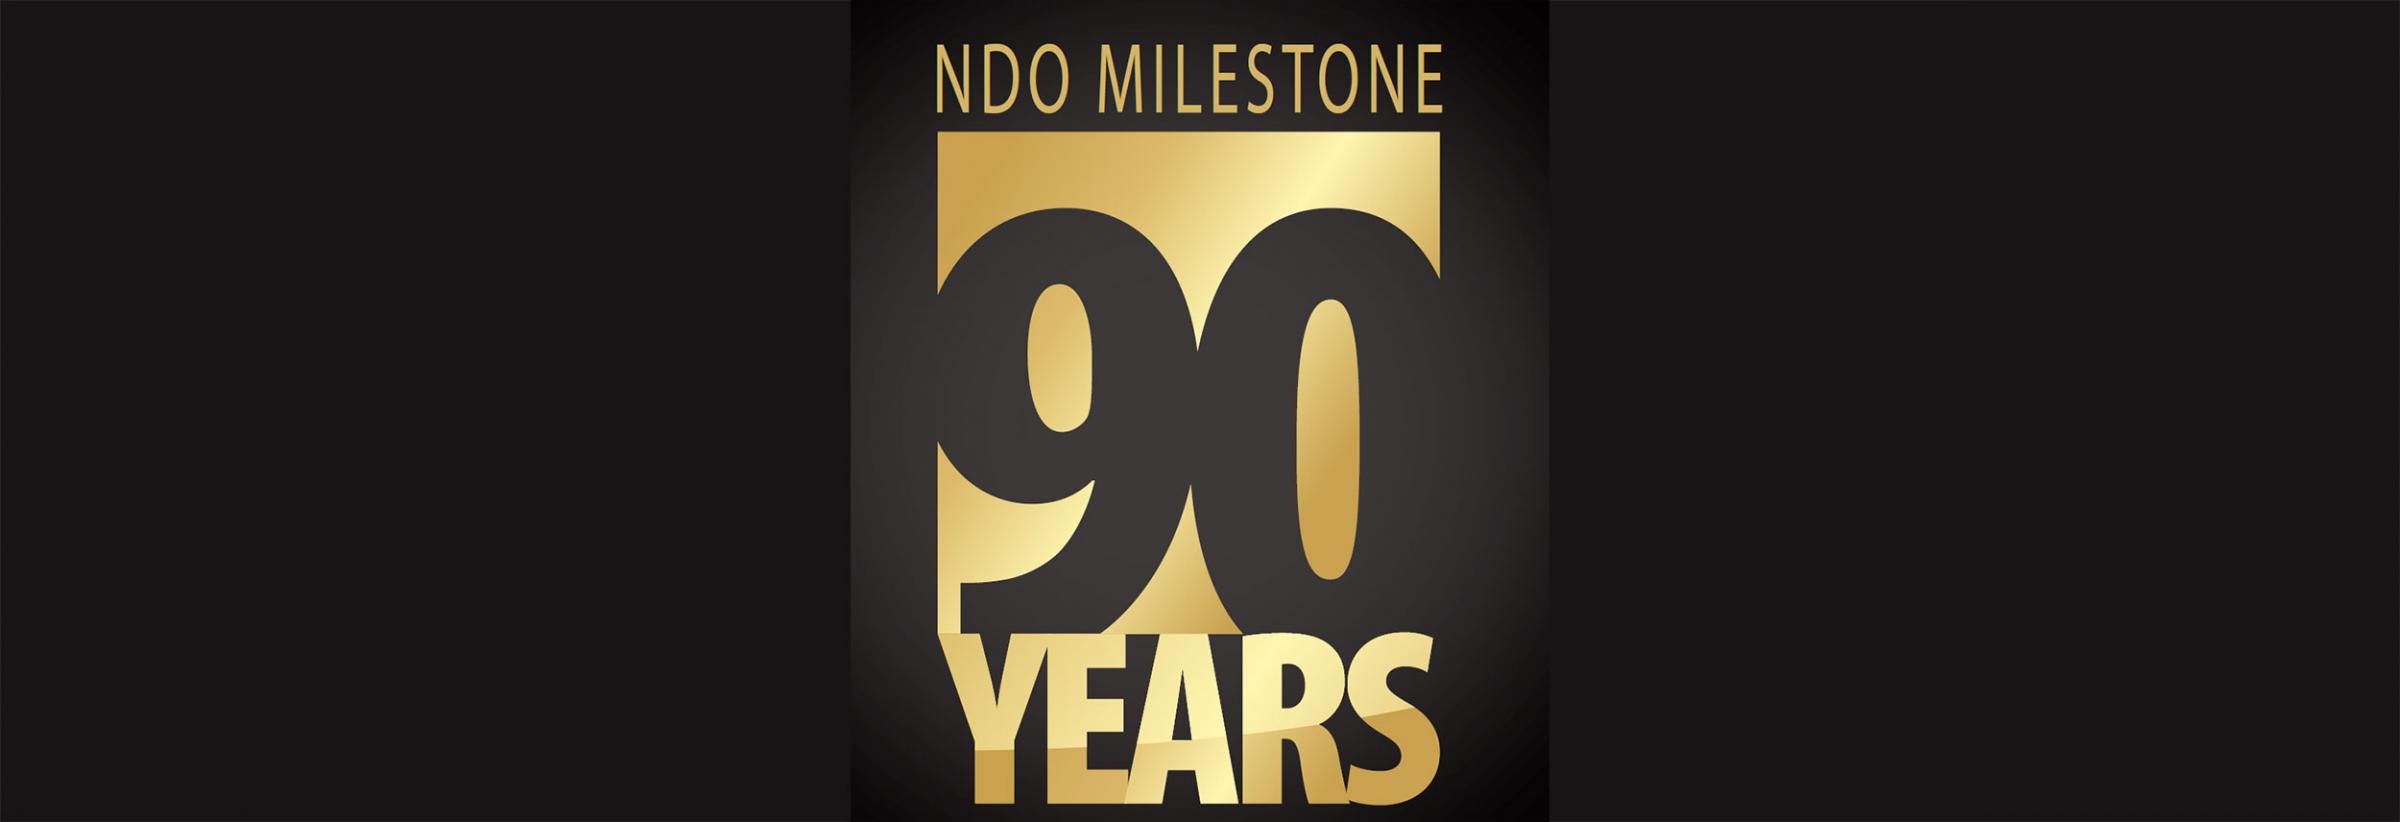 NDO Milestone 90 Years